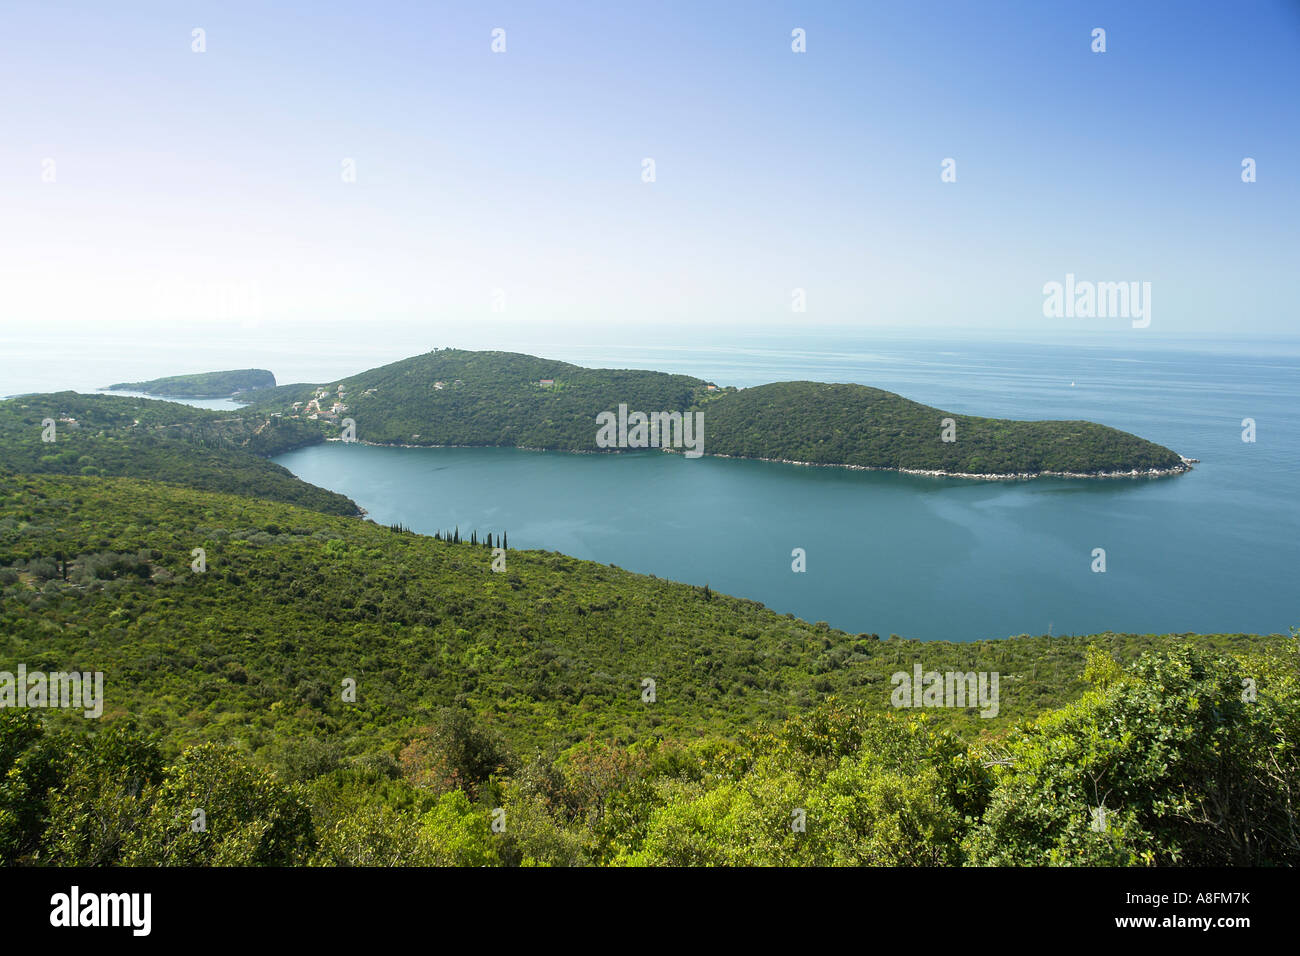 La côte près de la vallée de Konavle au sud de Dubrovnik Cavtat Dalmatie côte Adriatique Croatie Adria Banque D'Images